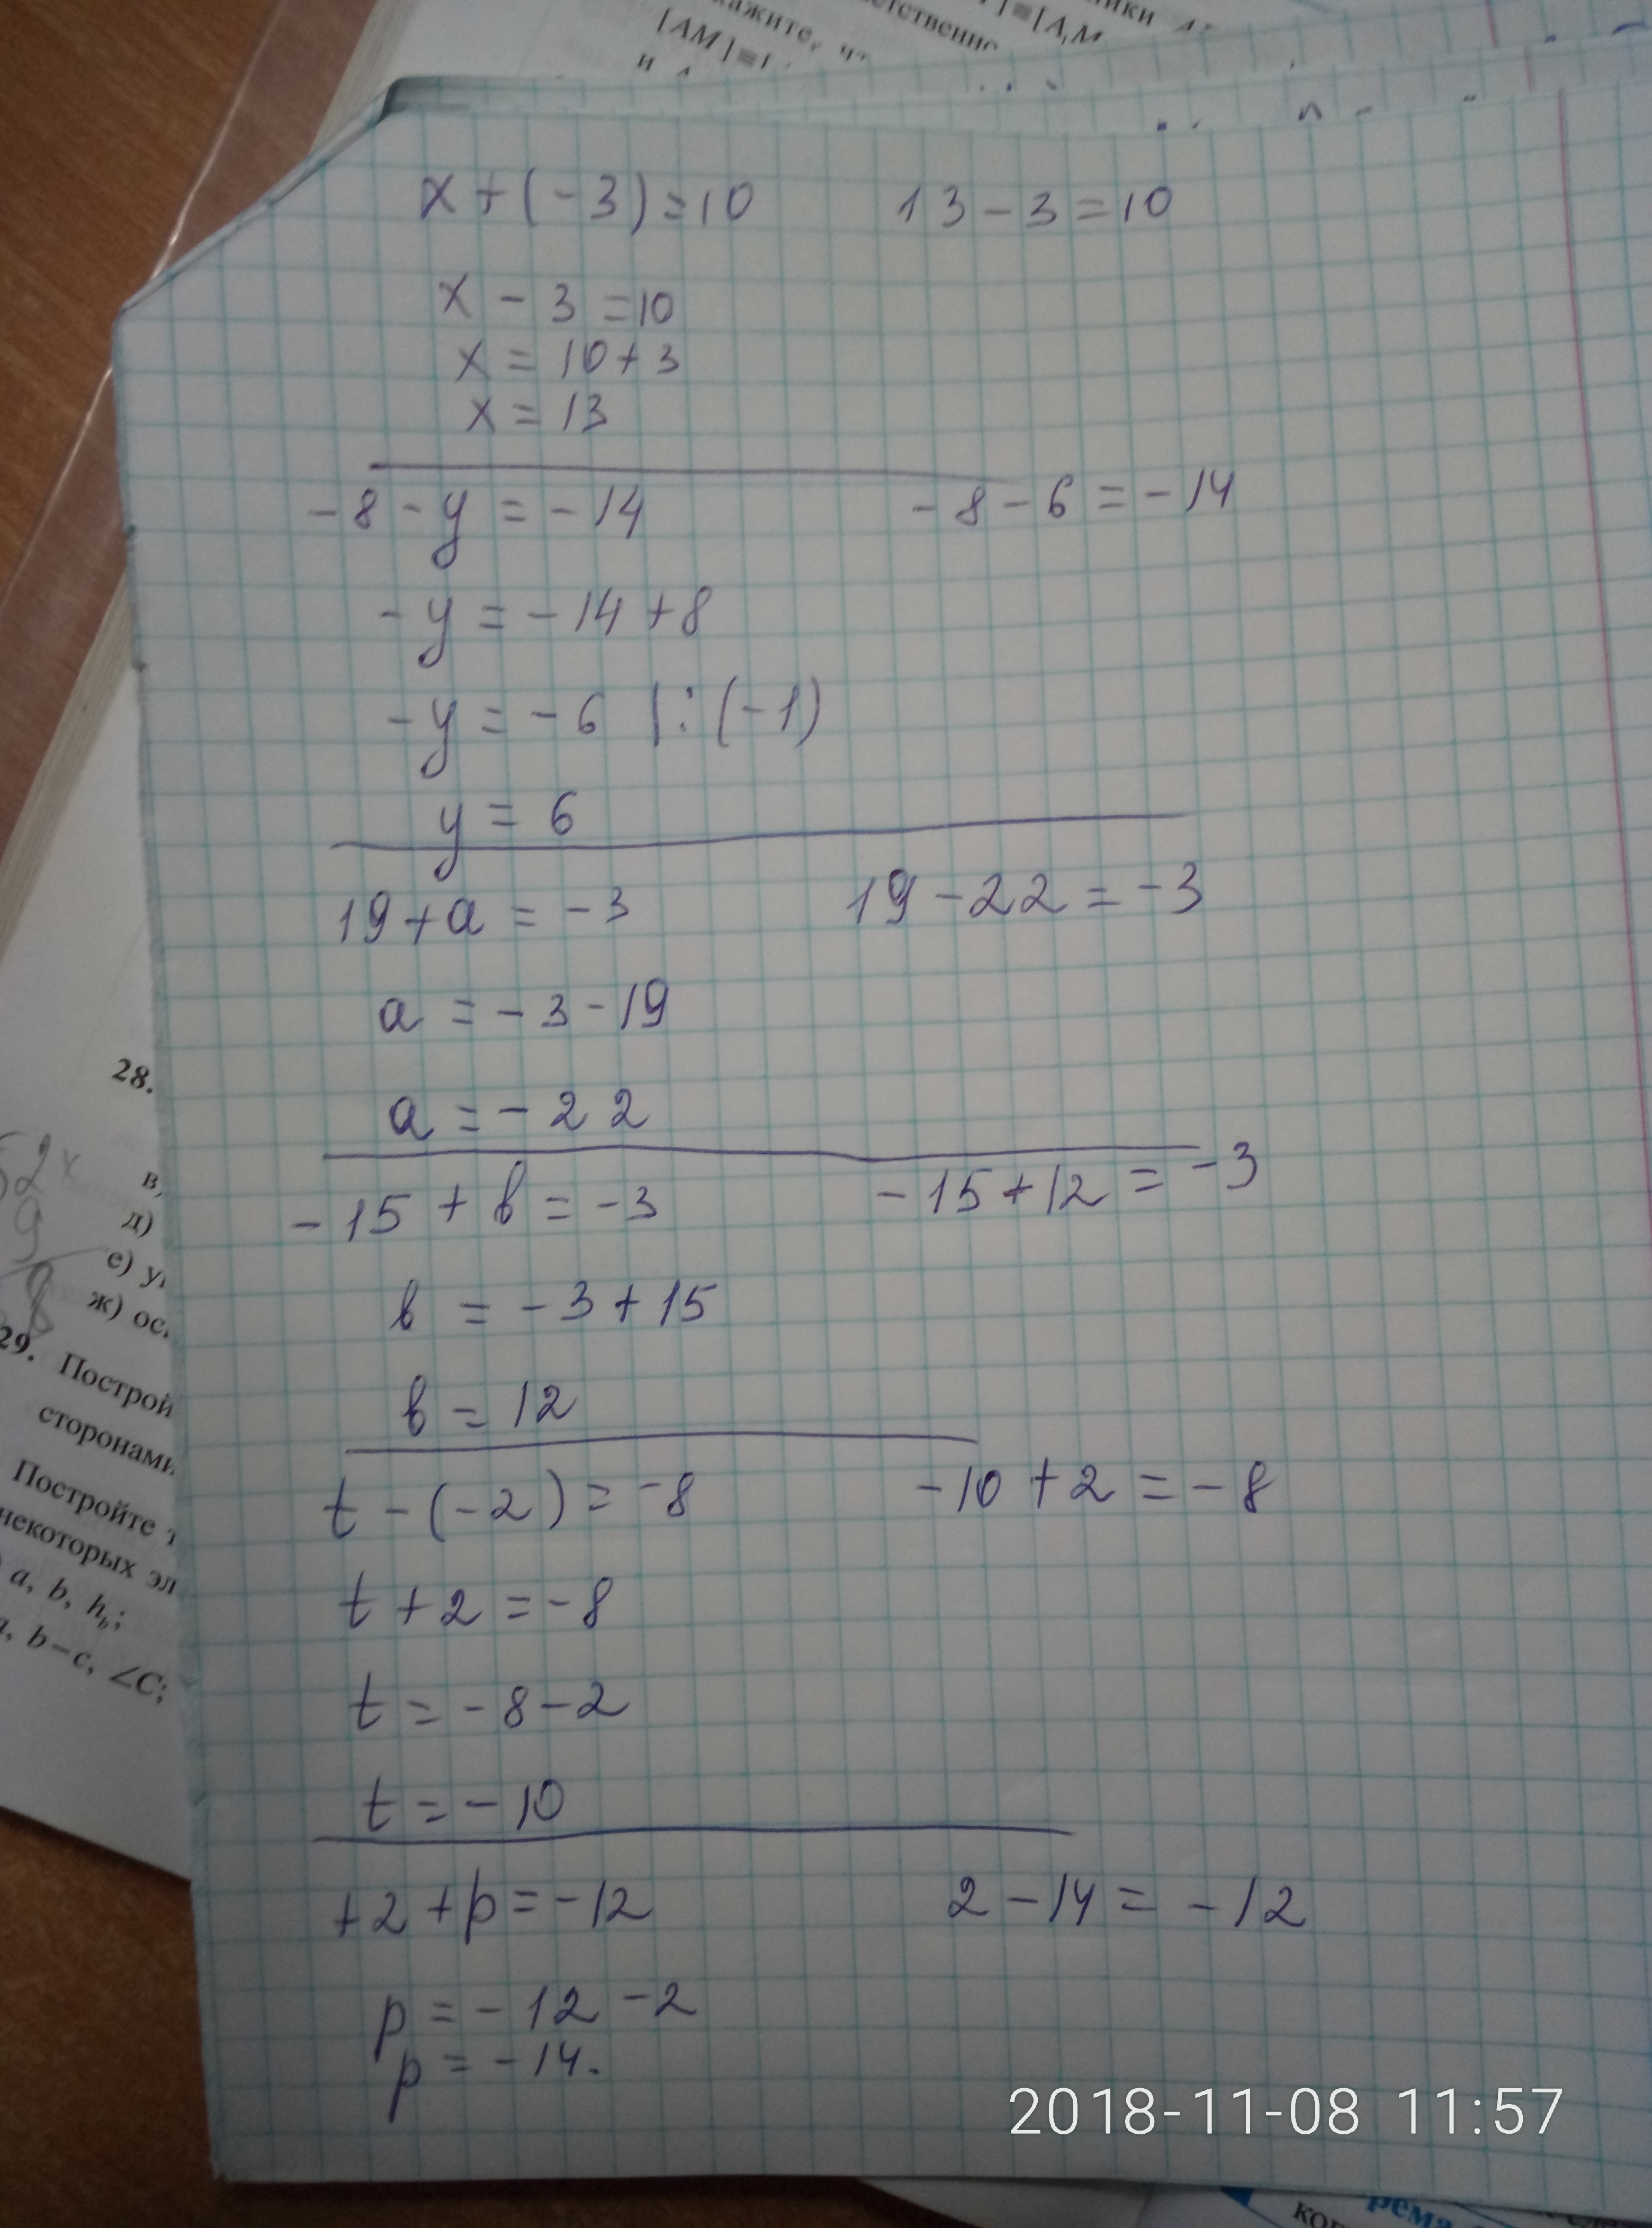 8x 13 3x 9. Ответ 8= x=2. X^3-6x^2+3x+21=0 решение. 8/X-3-10/X 2. X-3 ответ.